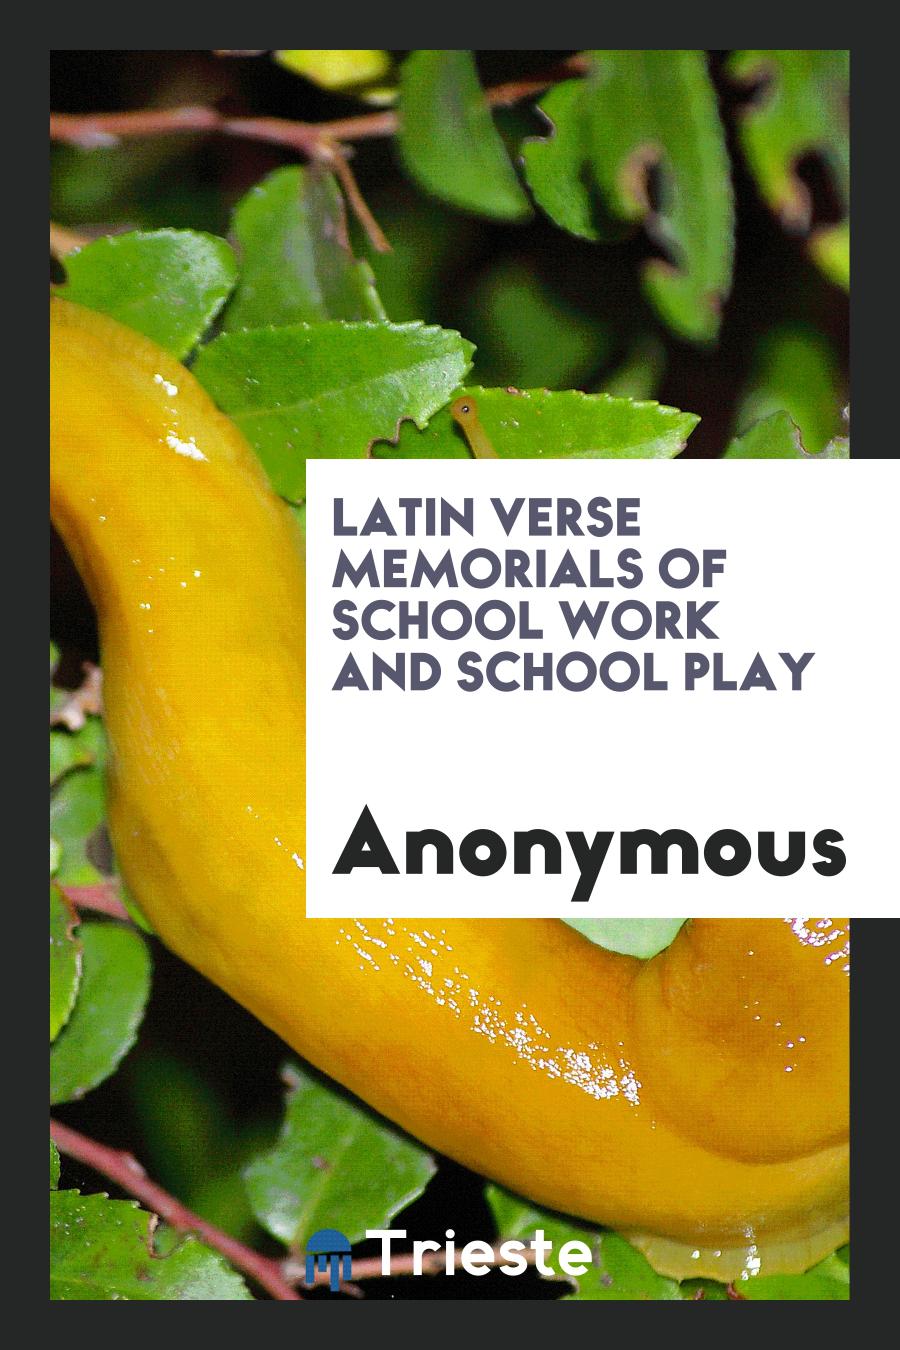 Latin verse memorials of school work and school play